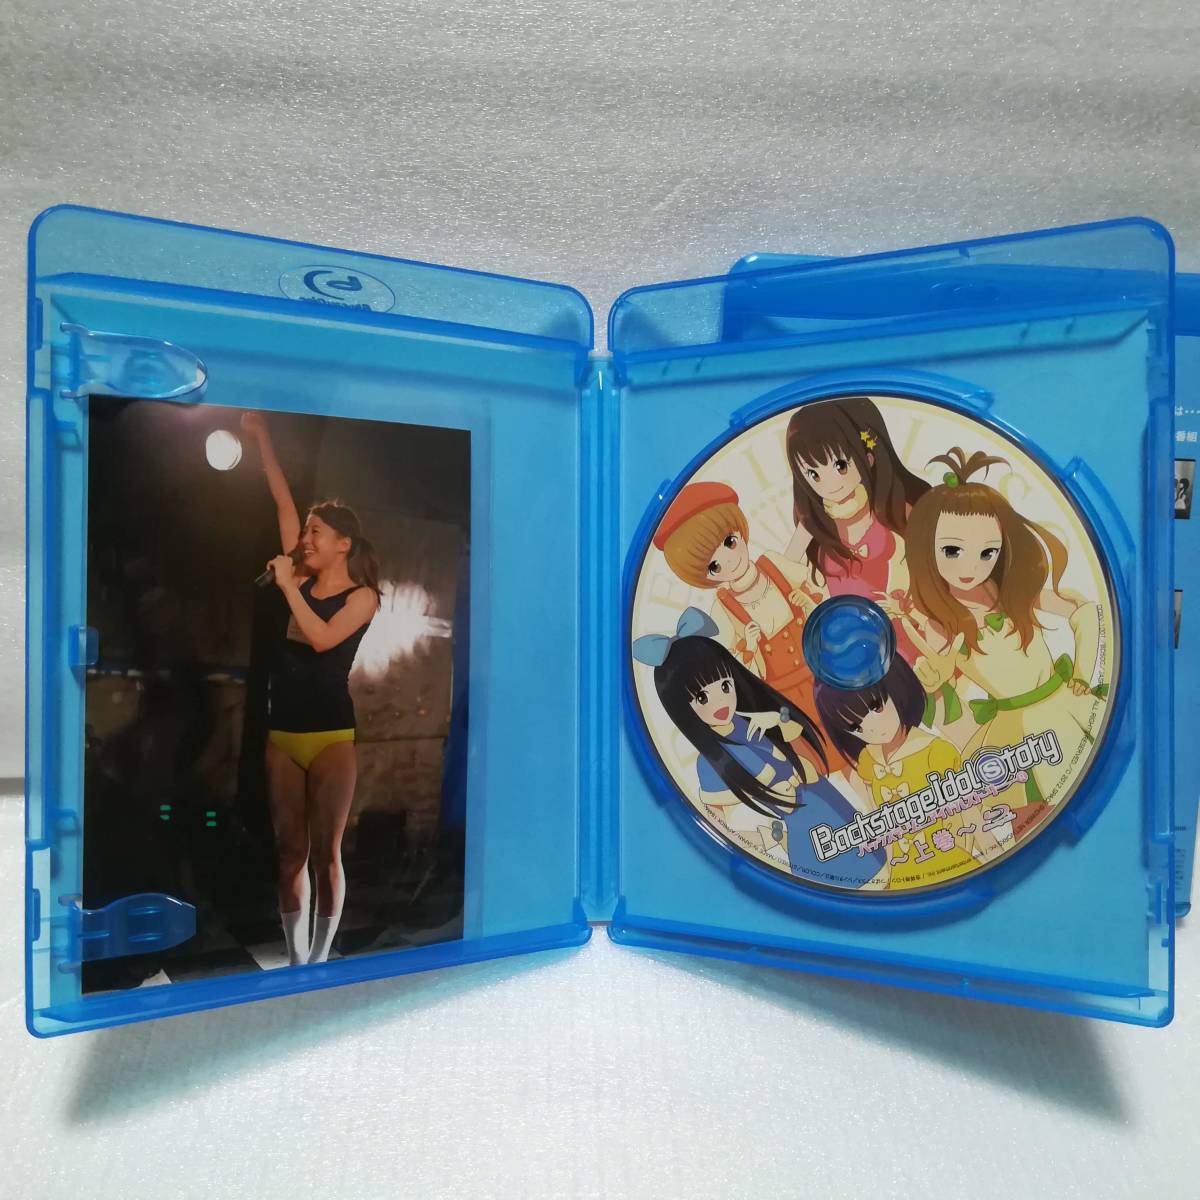 BiS バックステージ・アイドル・ストーリー Blu-ray 上下巻セット [自